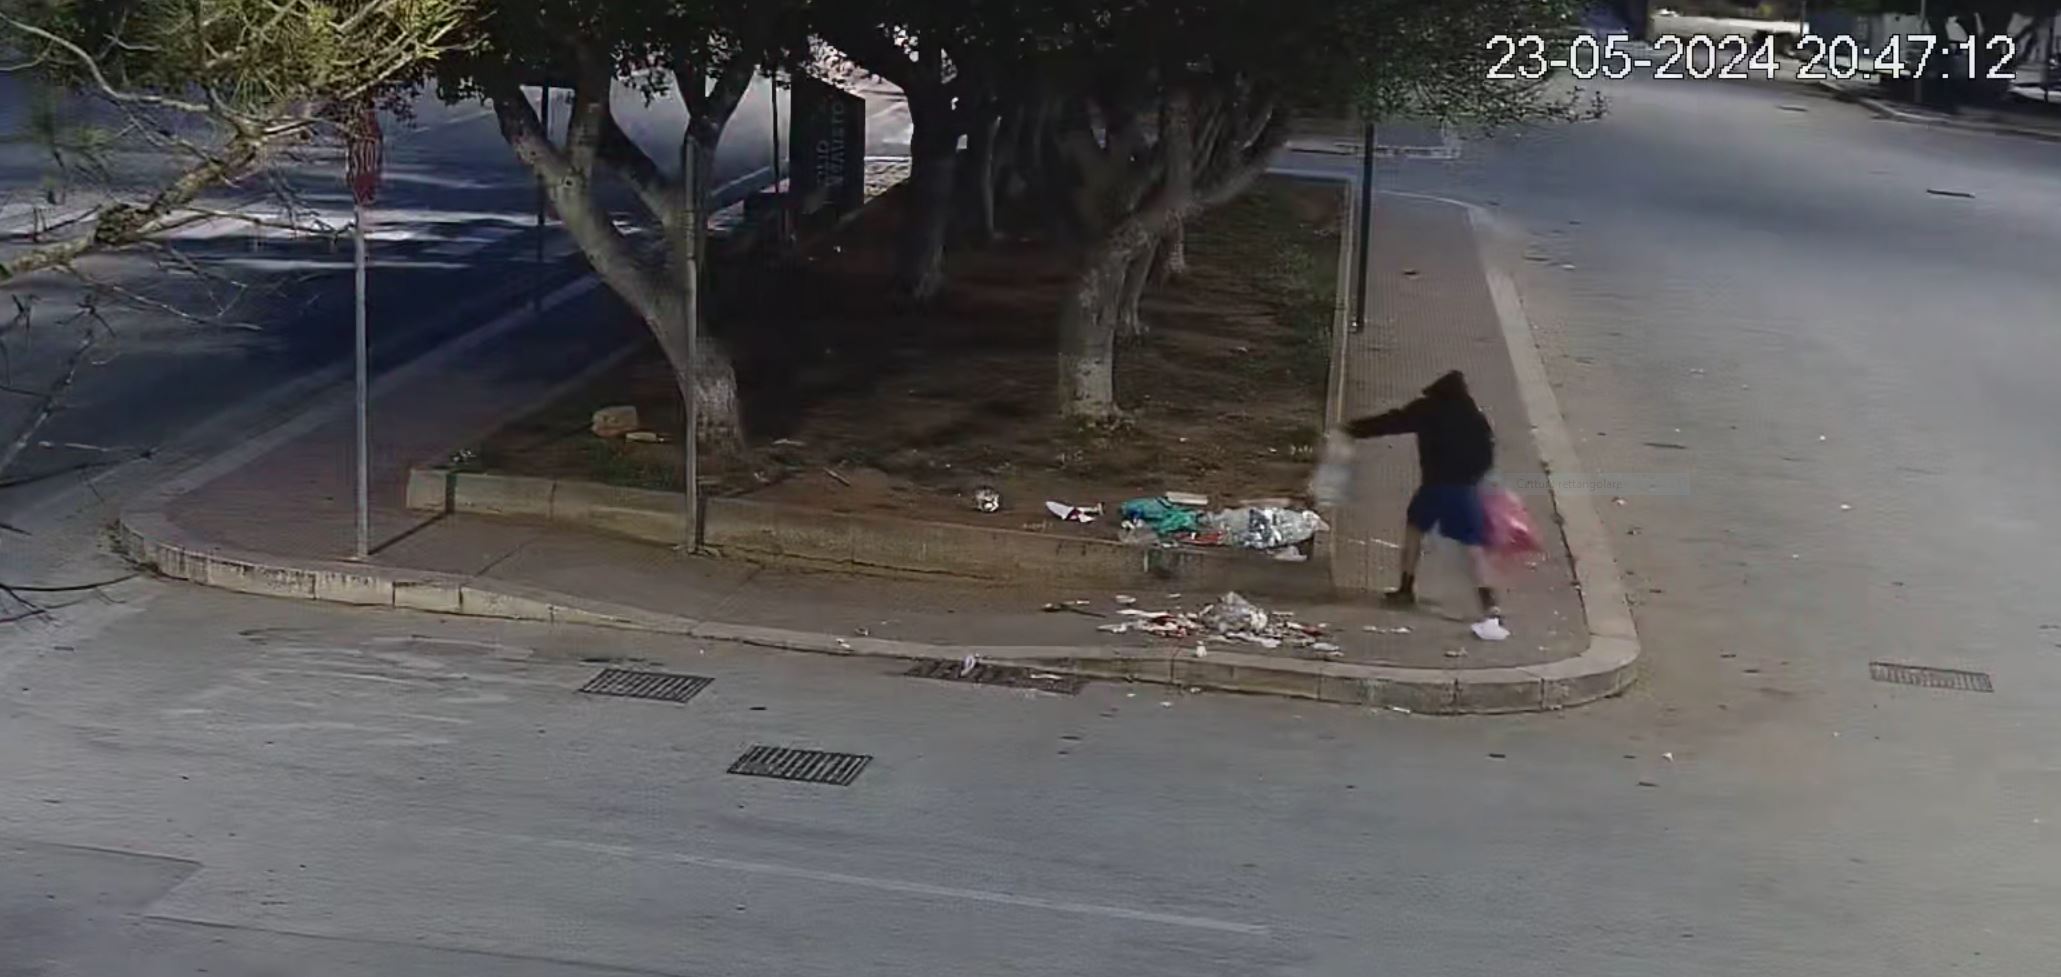 La Municipale di Marsala sequestra veicoli usati per abbandonare i rifiuti, minori usati per l’attività illecita